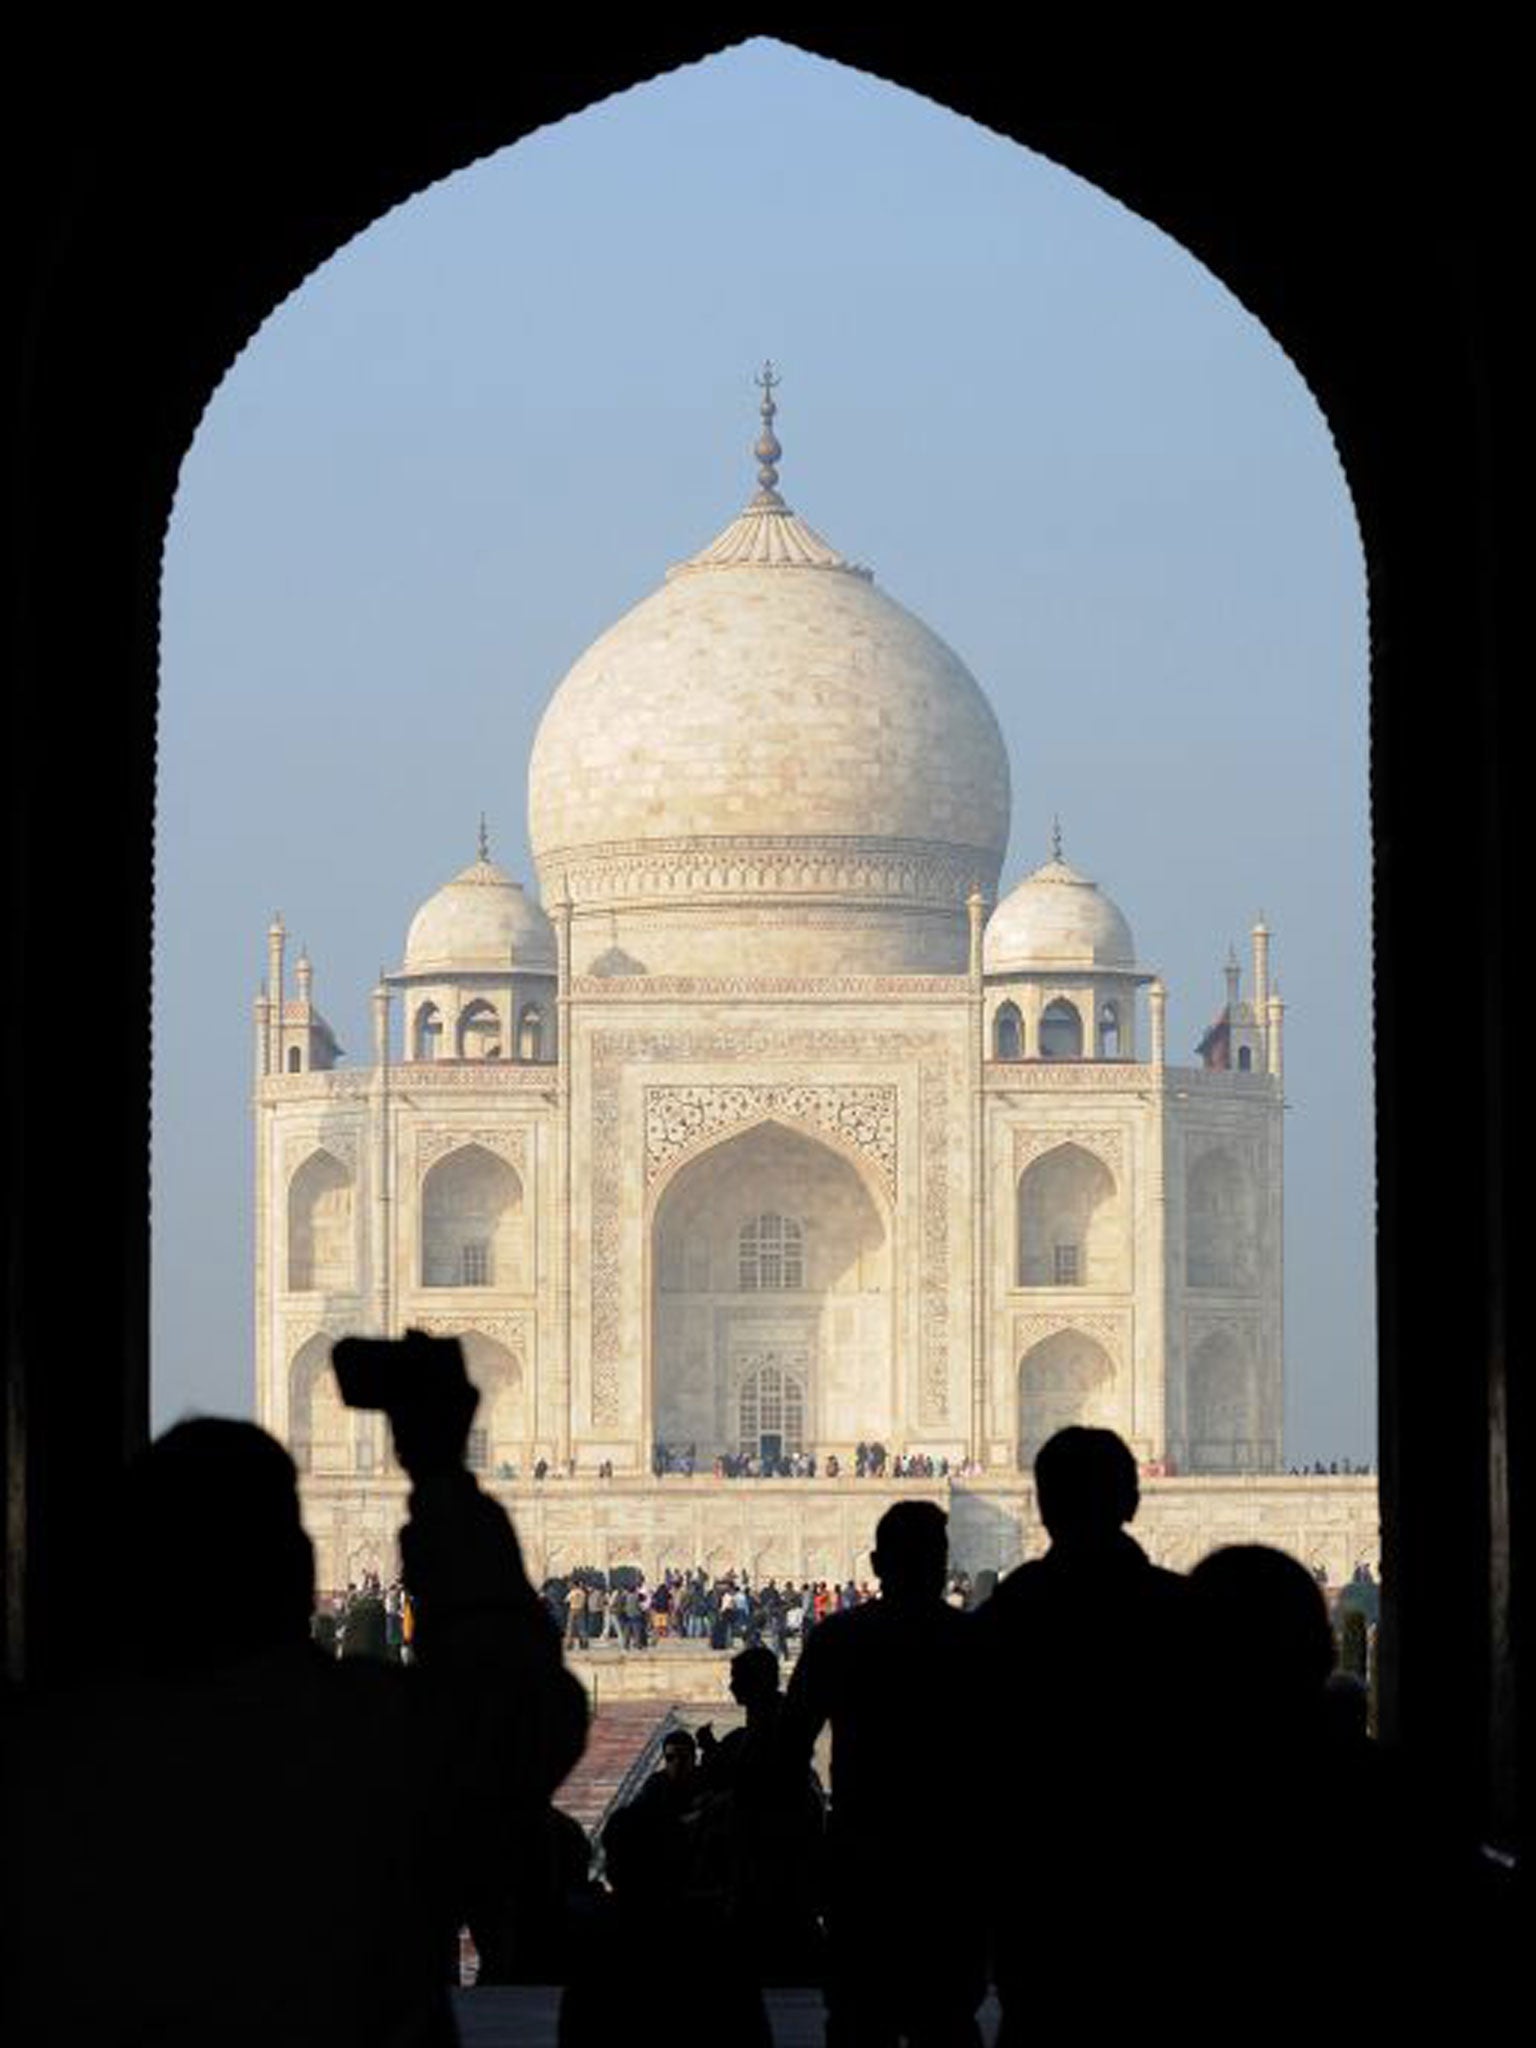 India's jewel: the Taj Mahal